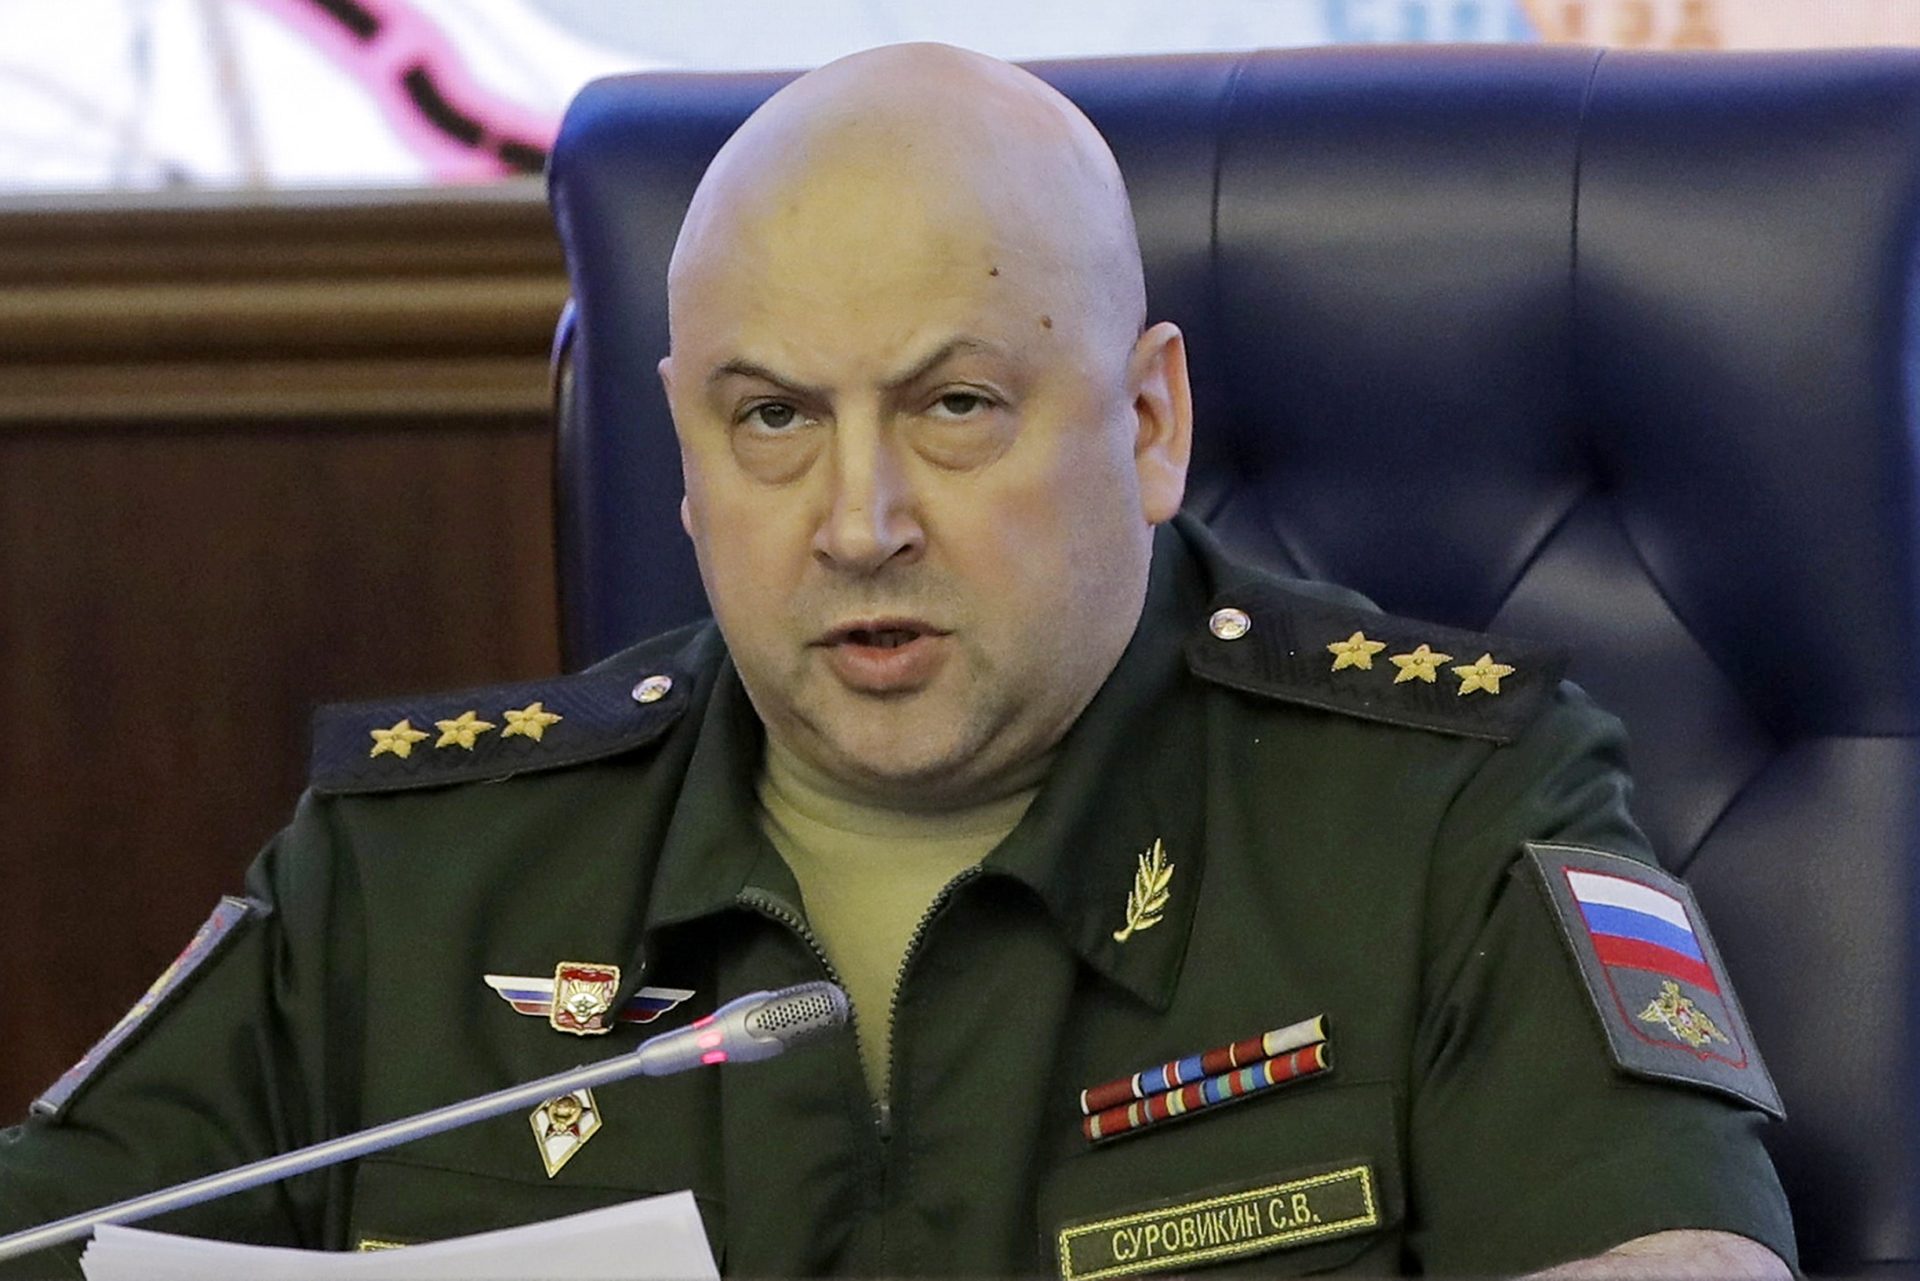 اعتقلت أجهزة الأمن، الجنرال سيرغي سوروفيكين